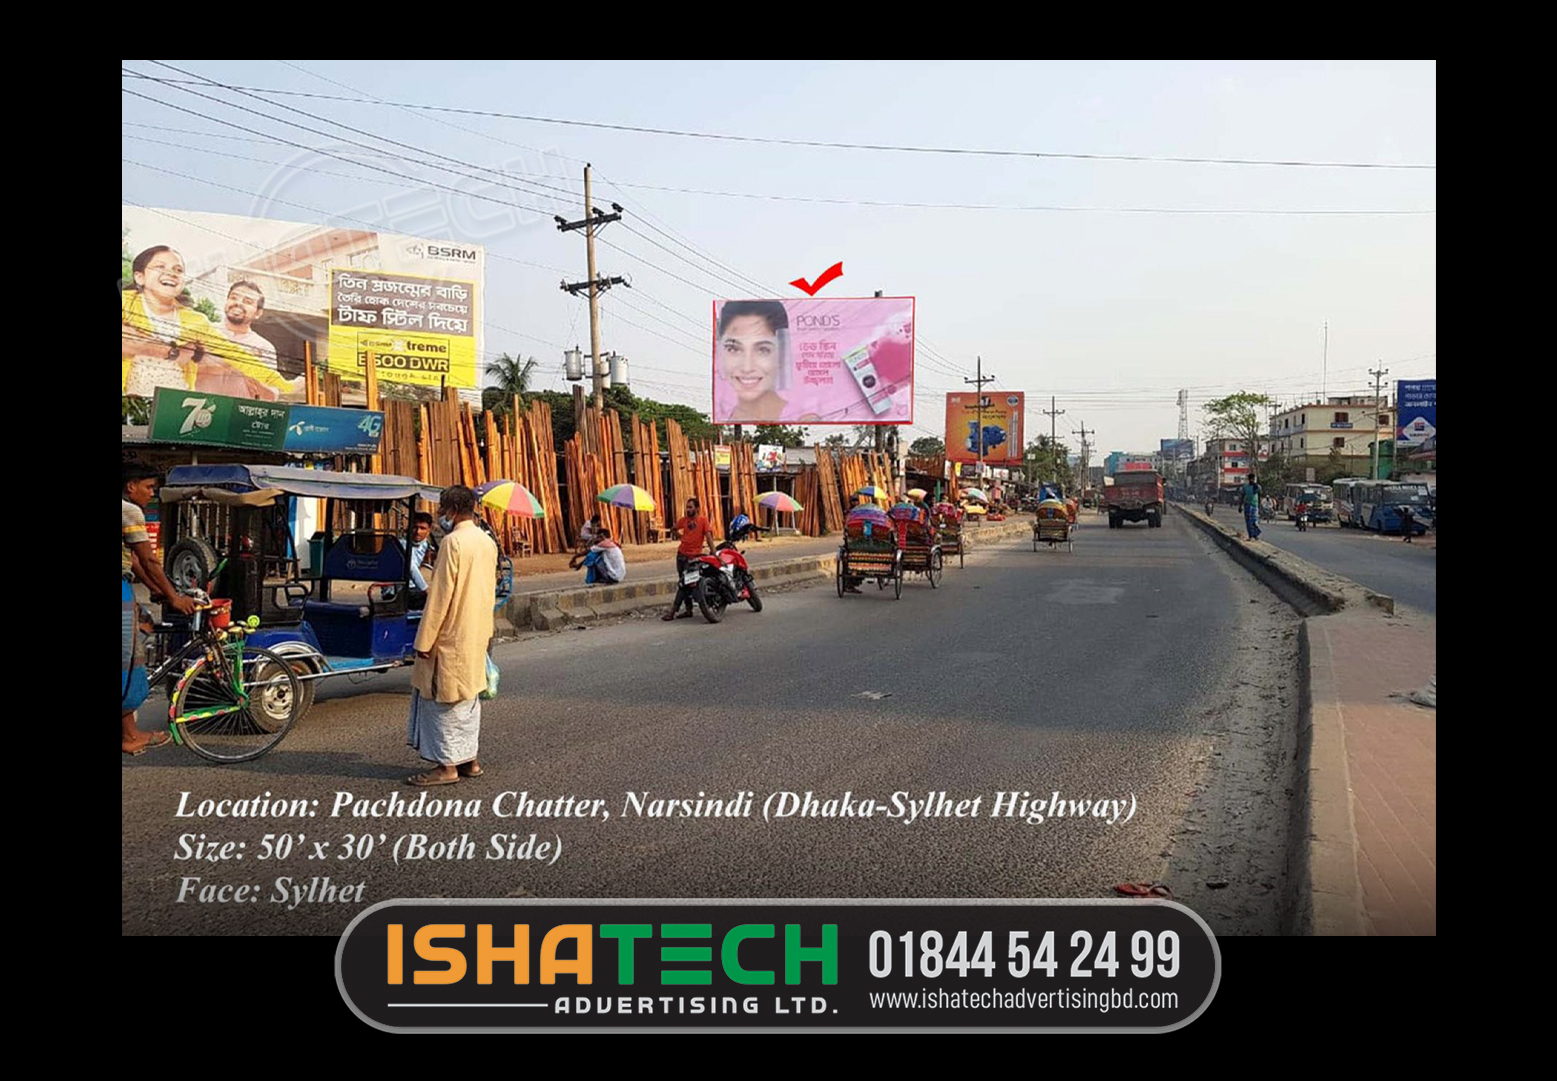 OUTDOOR BILLBOARD ADVERTISING PRICE IN DHAKA, BANGLADESH